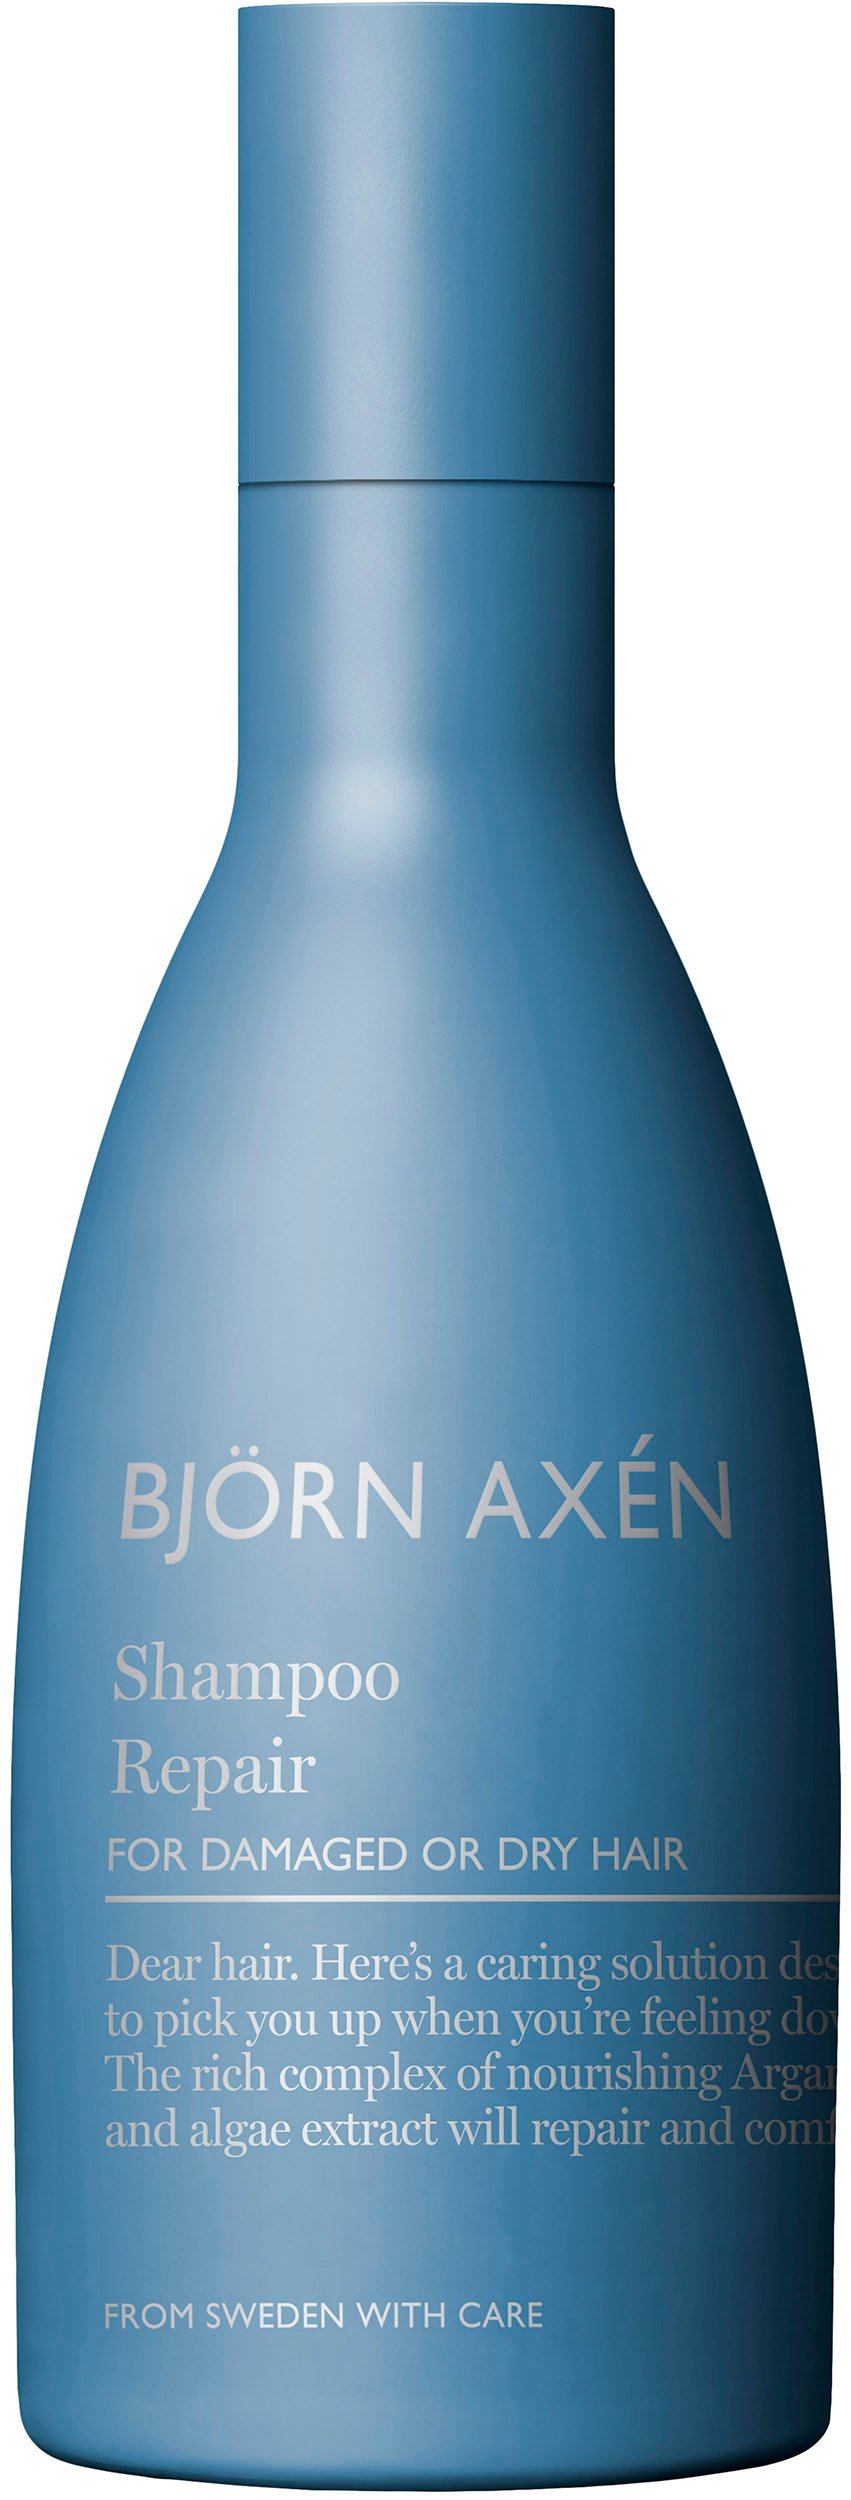 Björn Axén Repair shampoo 250 ml